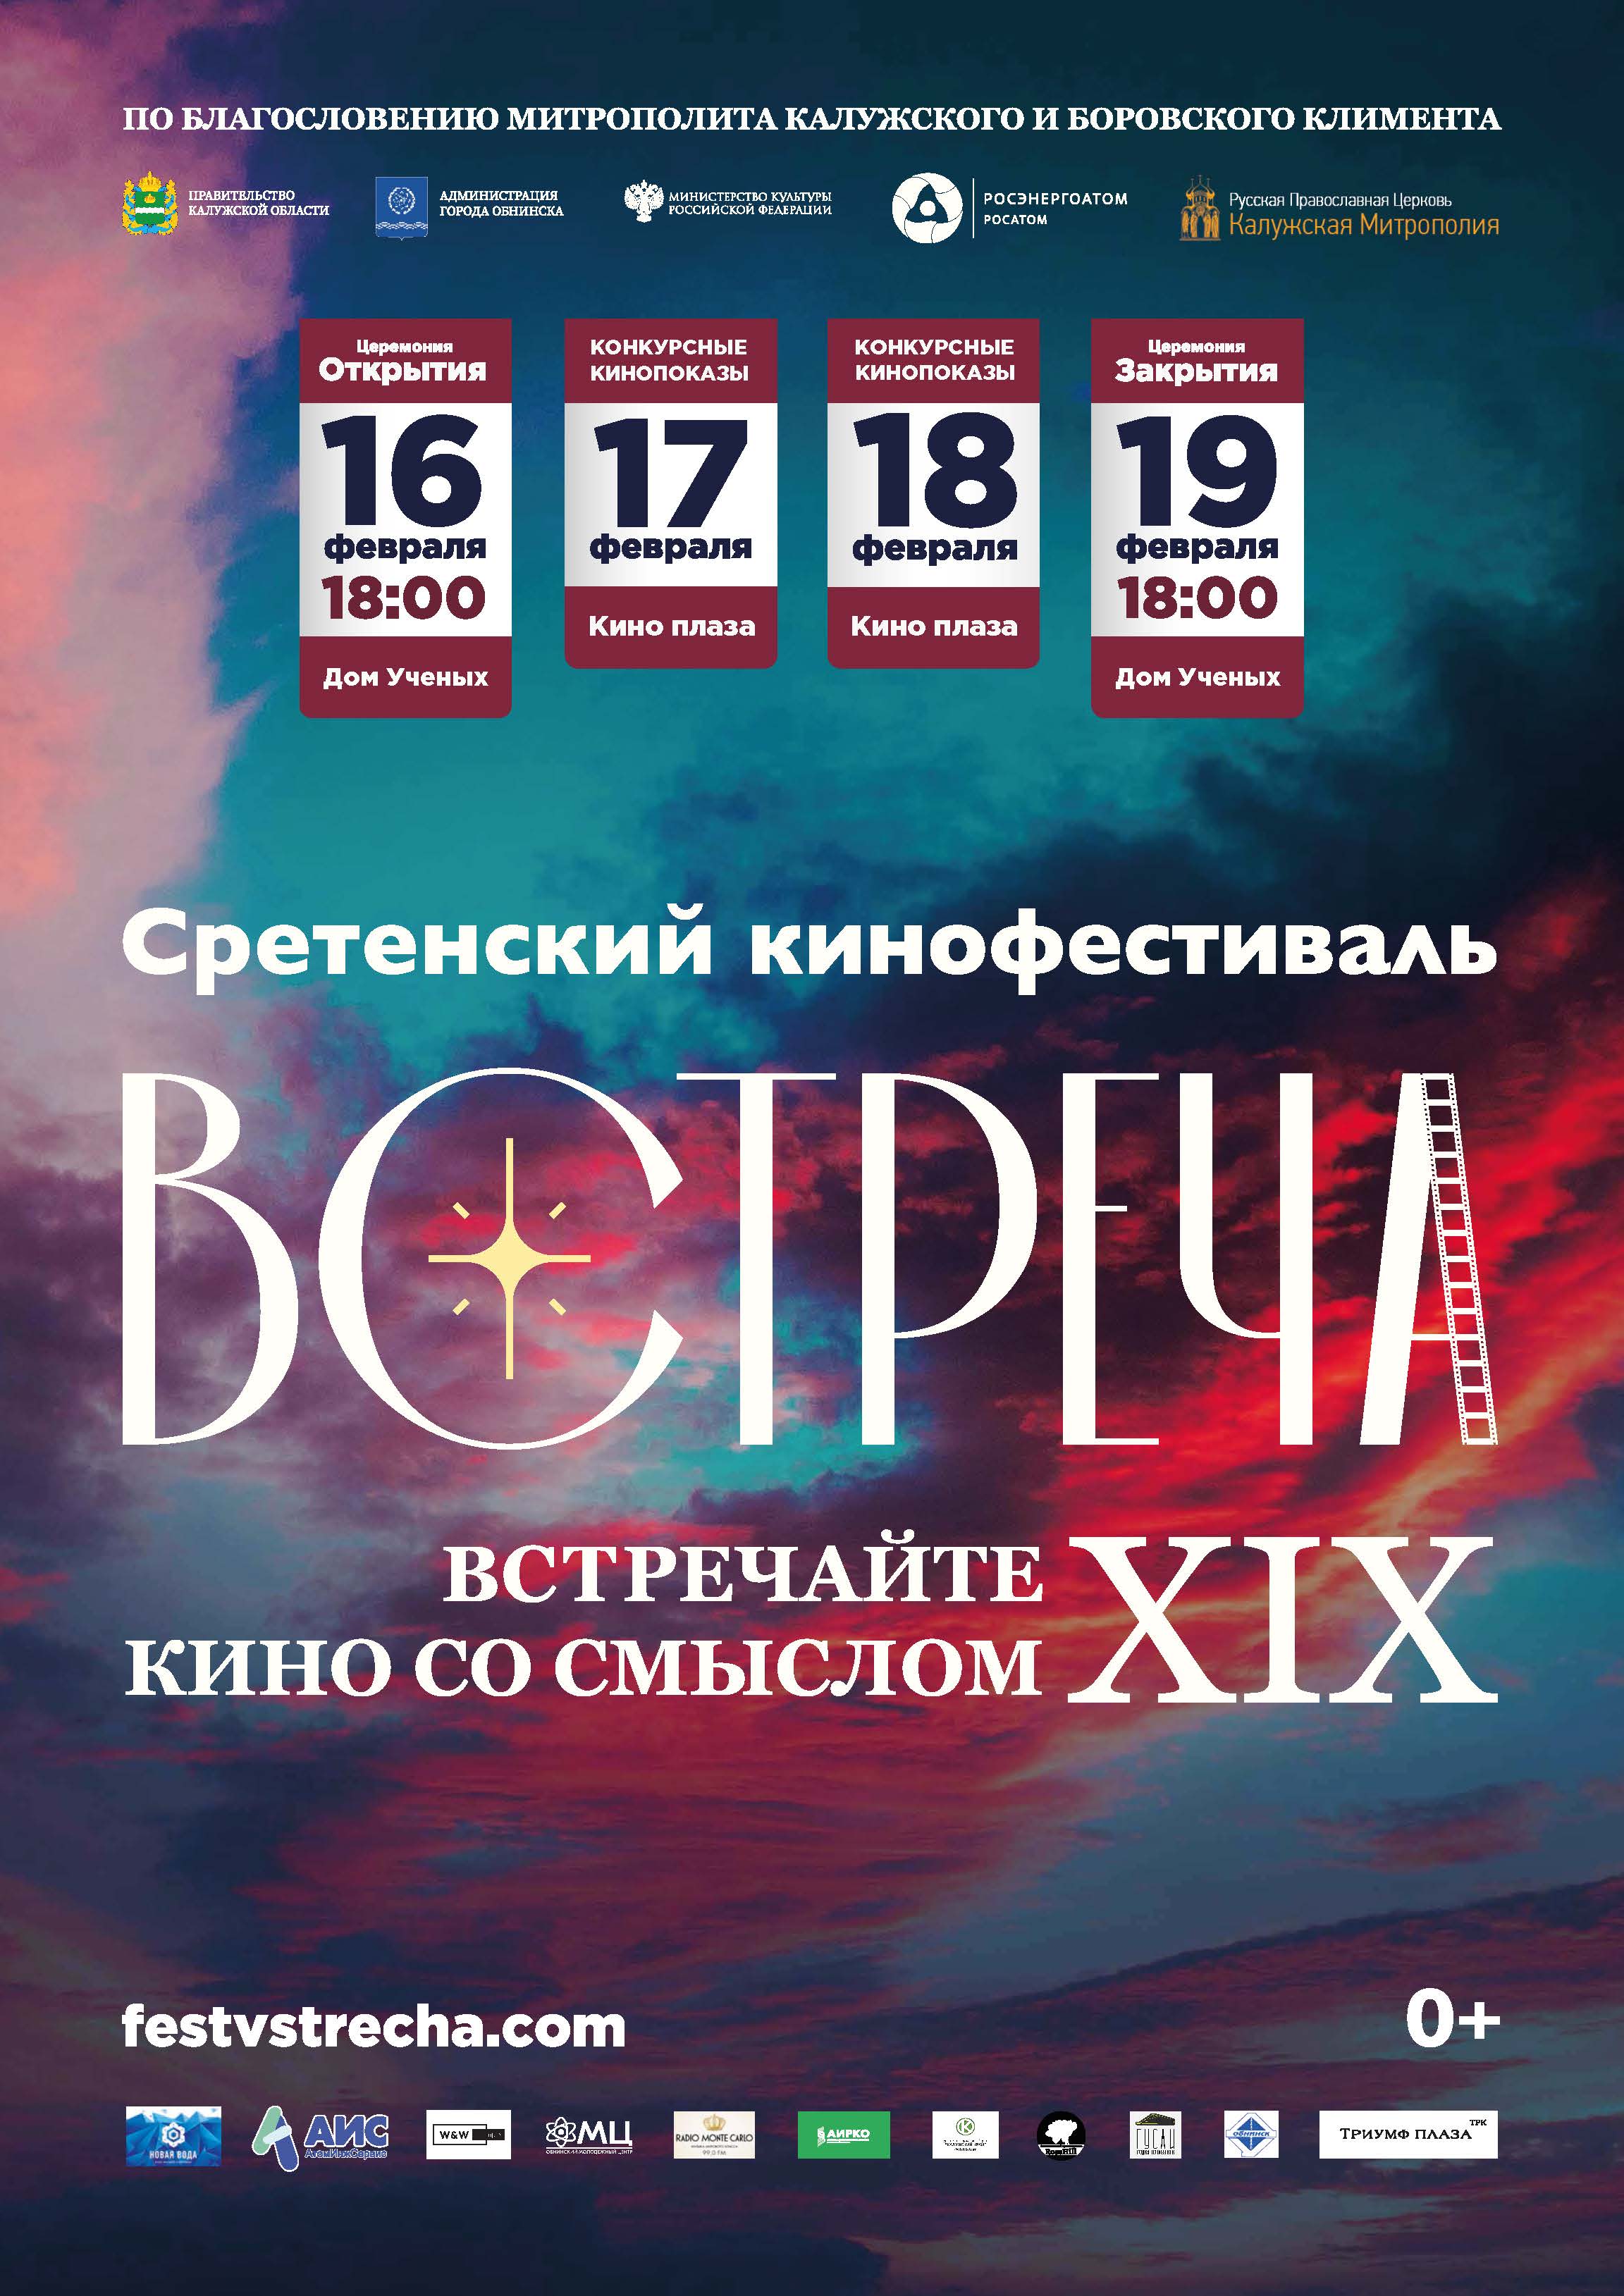 Международный православный Сретенский кинофестиваль “Встреча”